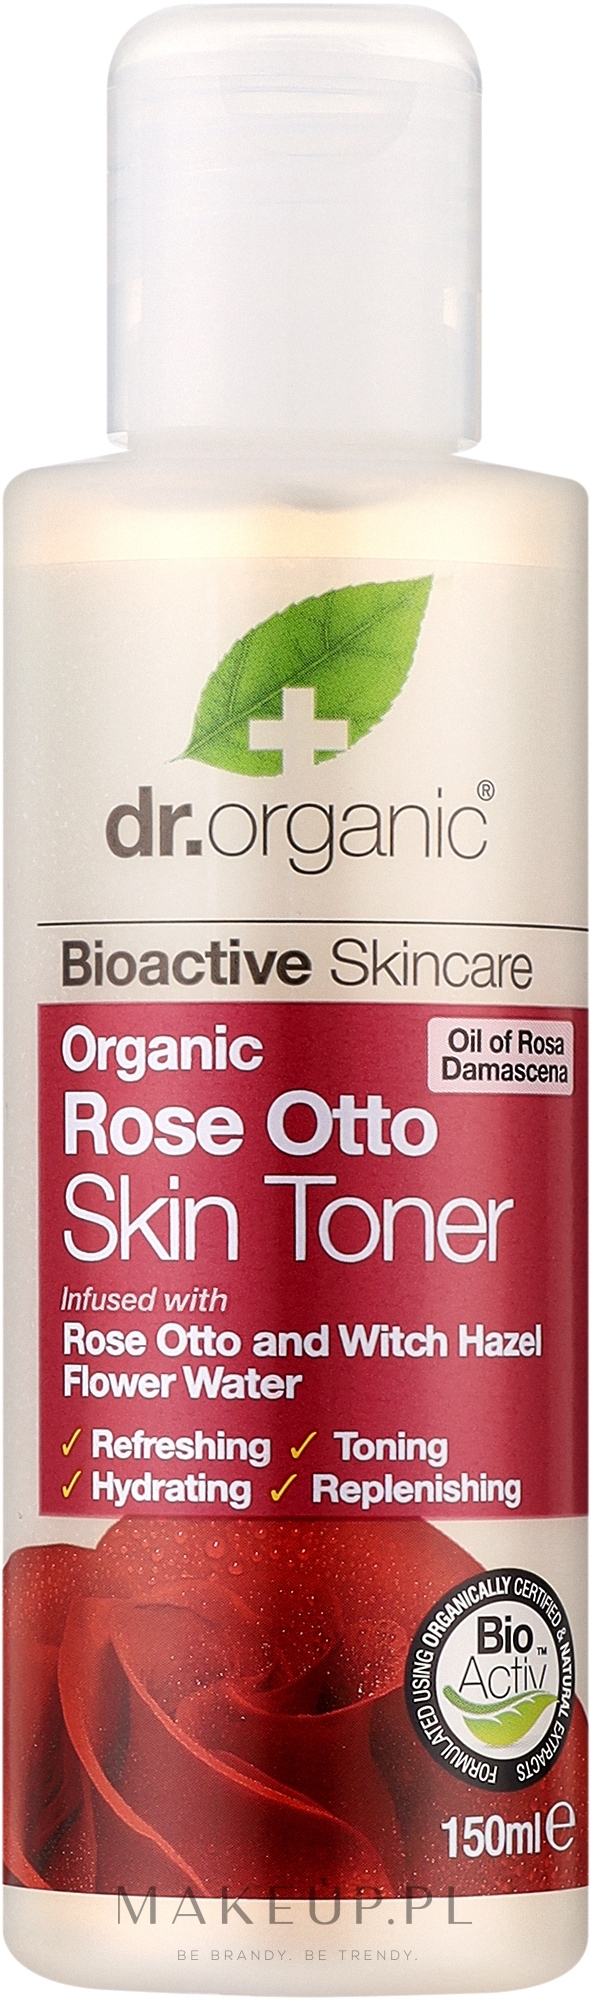 Tonik do twarzy Organiczna róża damasceńska Otto - Dr Organic Bioactive Skincare Rose Otto Skin Toner — Zdjęcie 150 ml